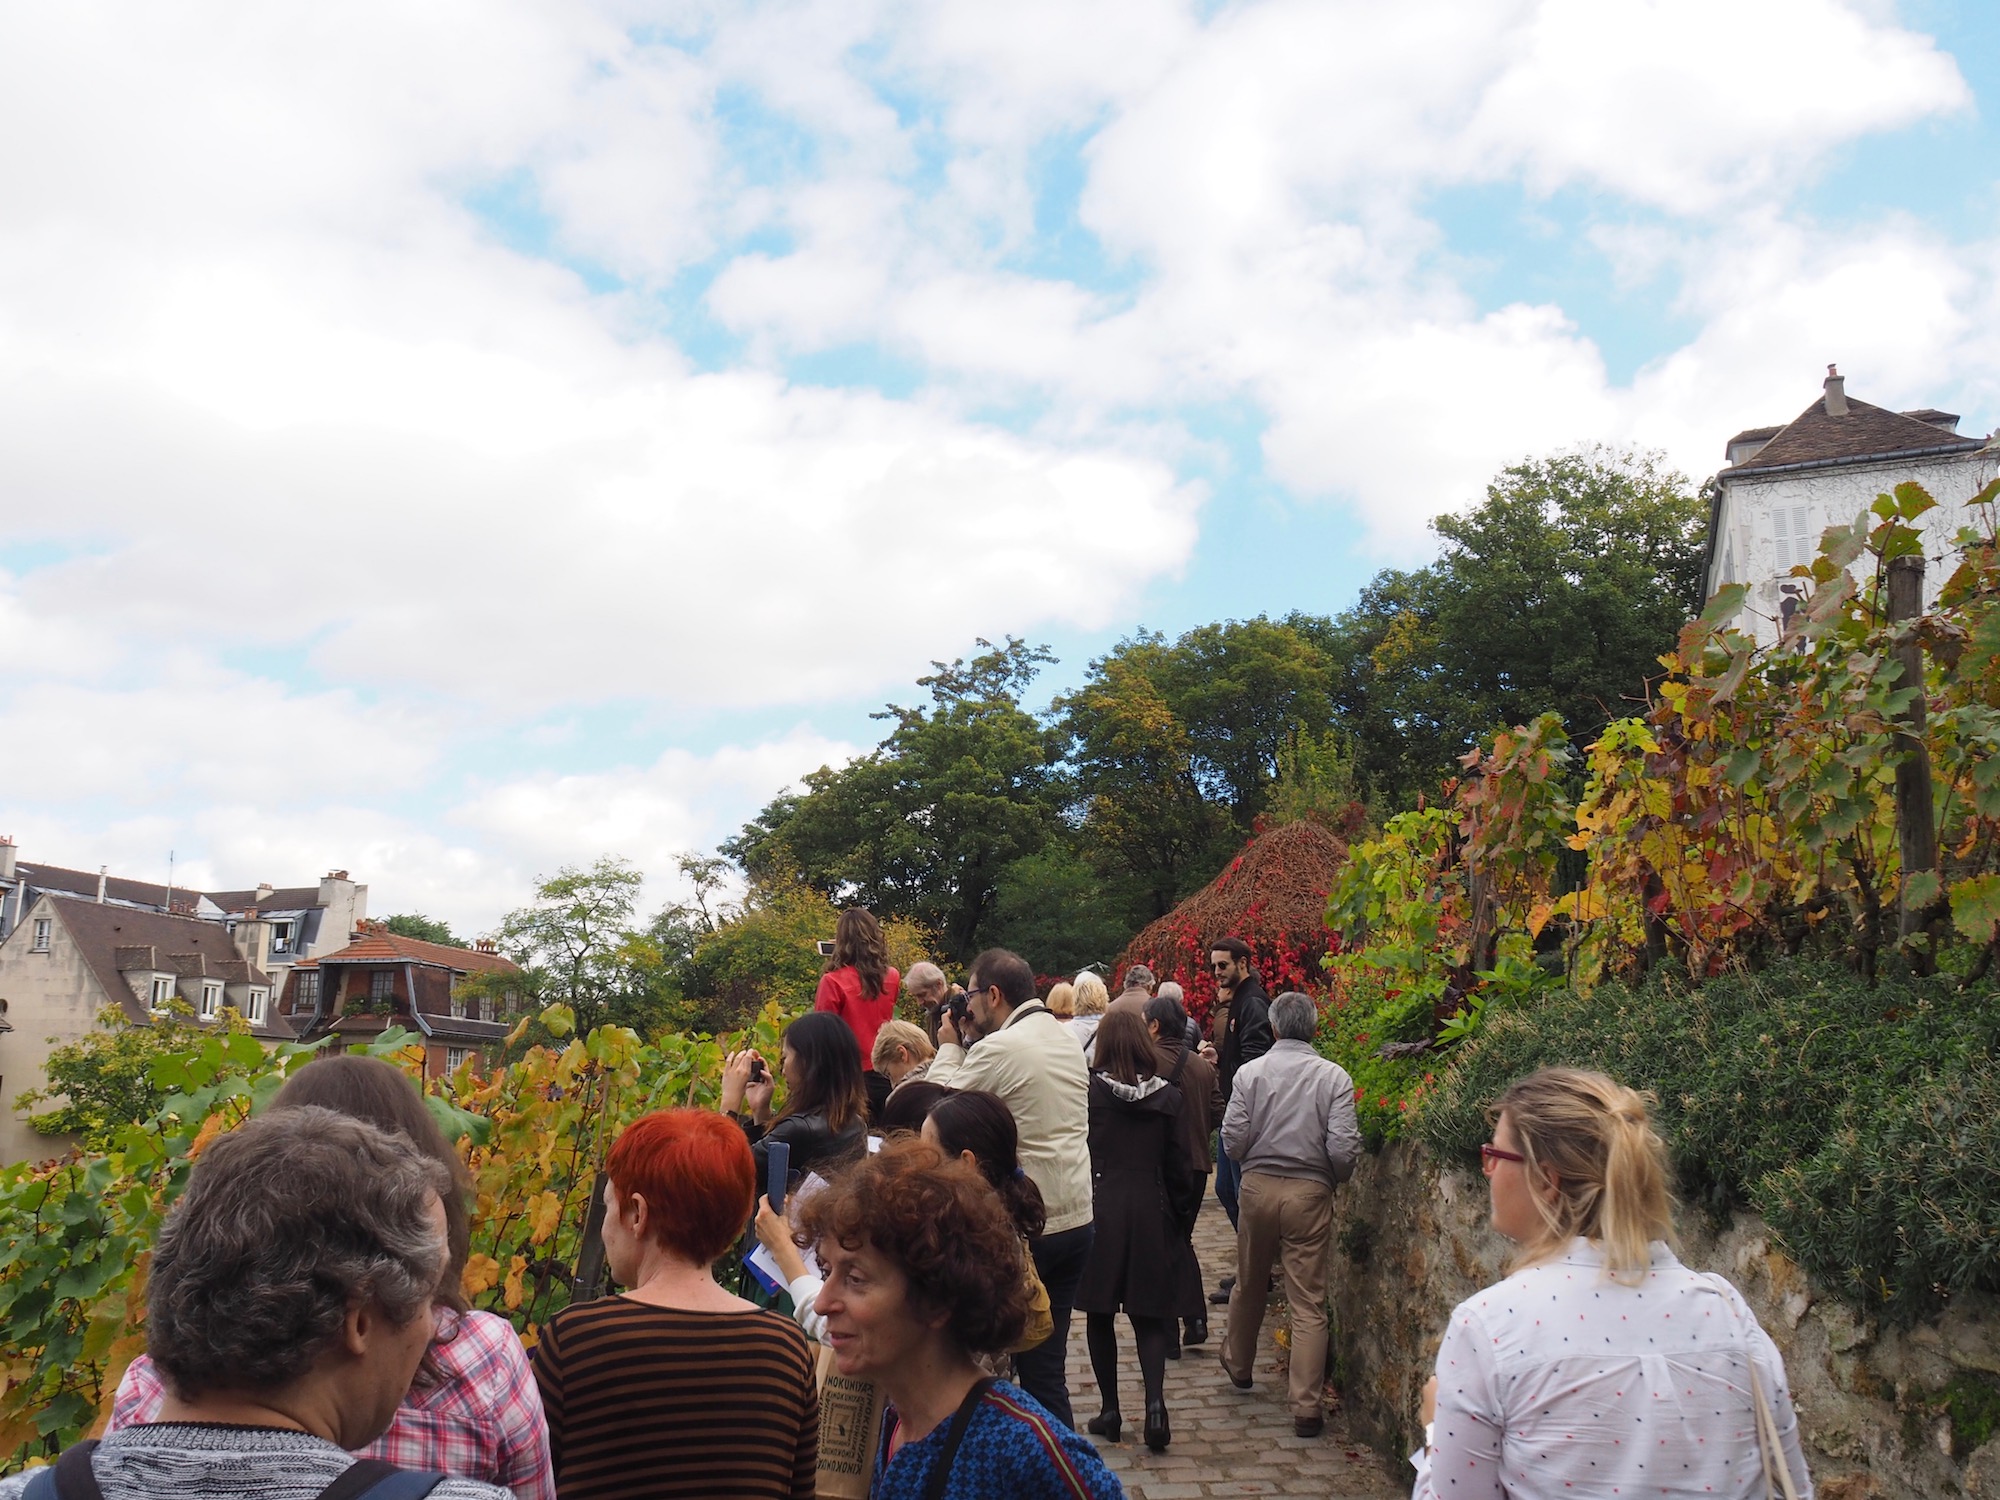 La vigne de Montmartre, visite d'un lieu rare et insolite